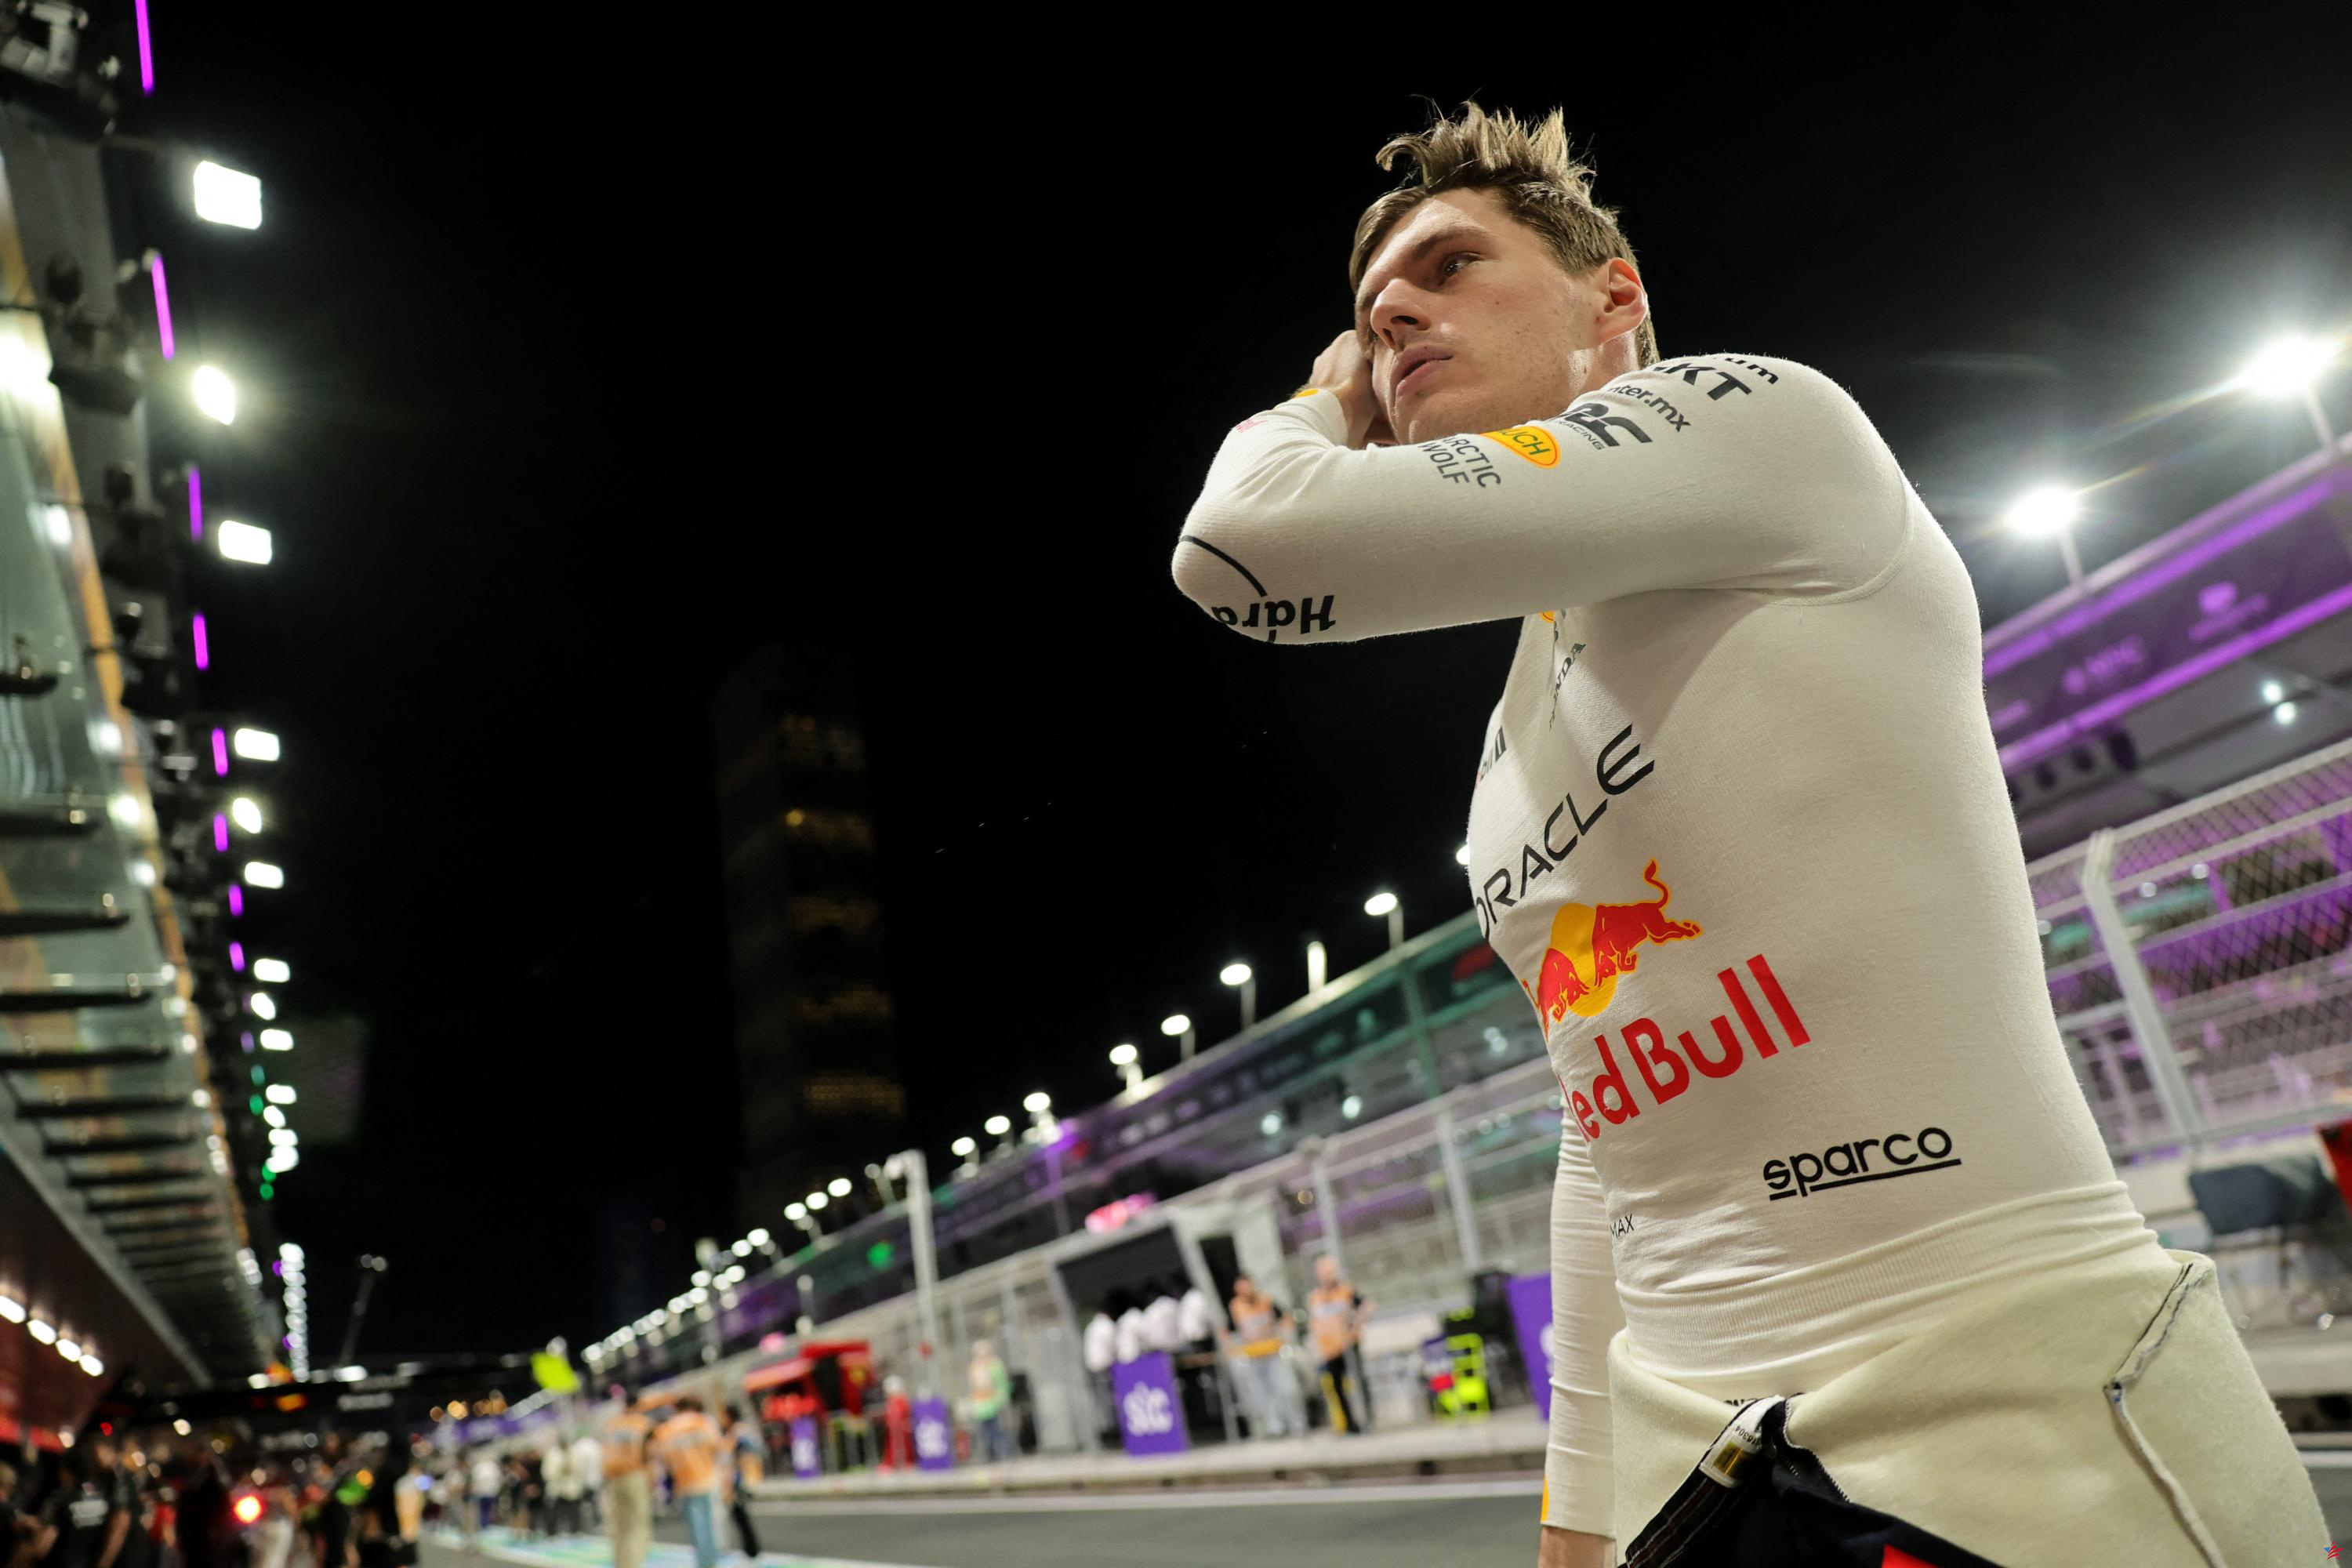 Fórmula 1: Solo en el mundo, Verstappen partirá desde la pole en el Gran Premio de Arabia Saudita